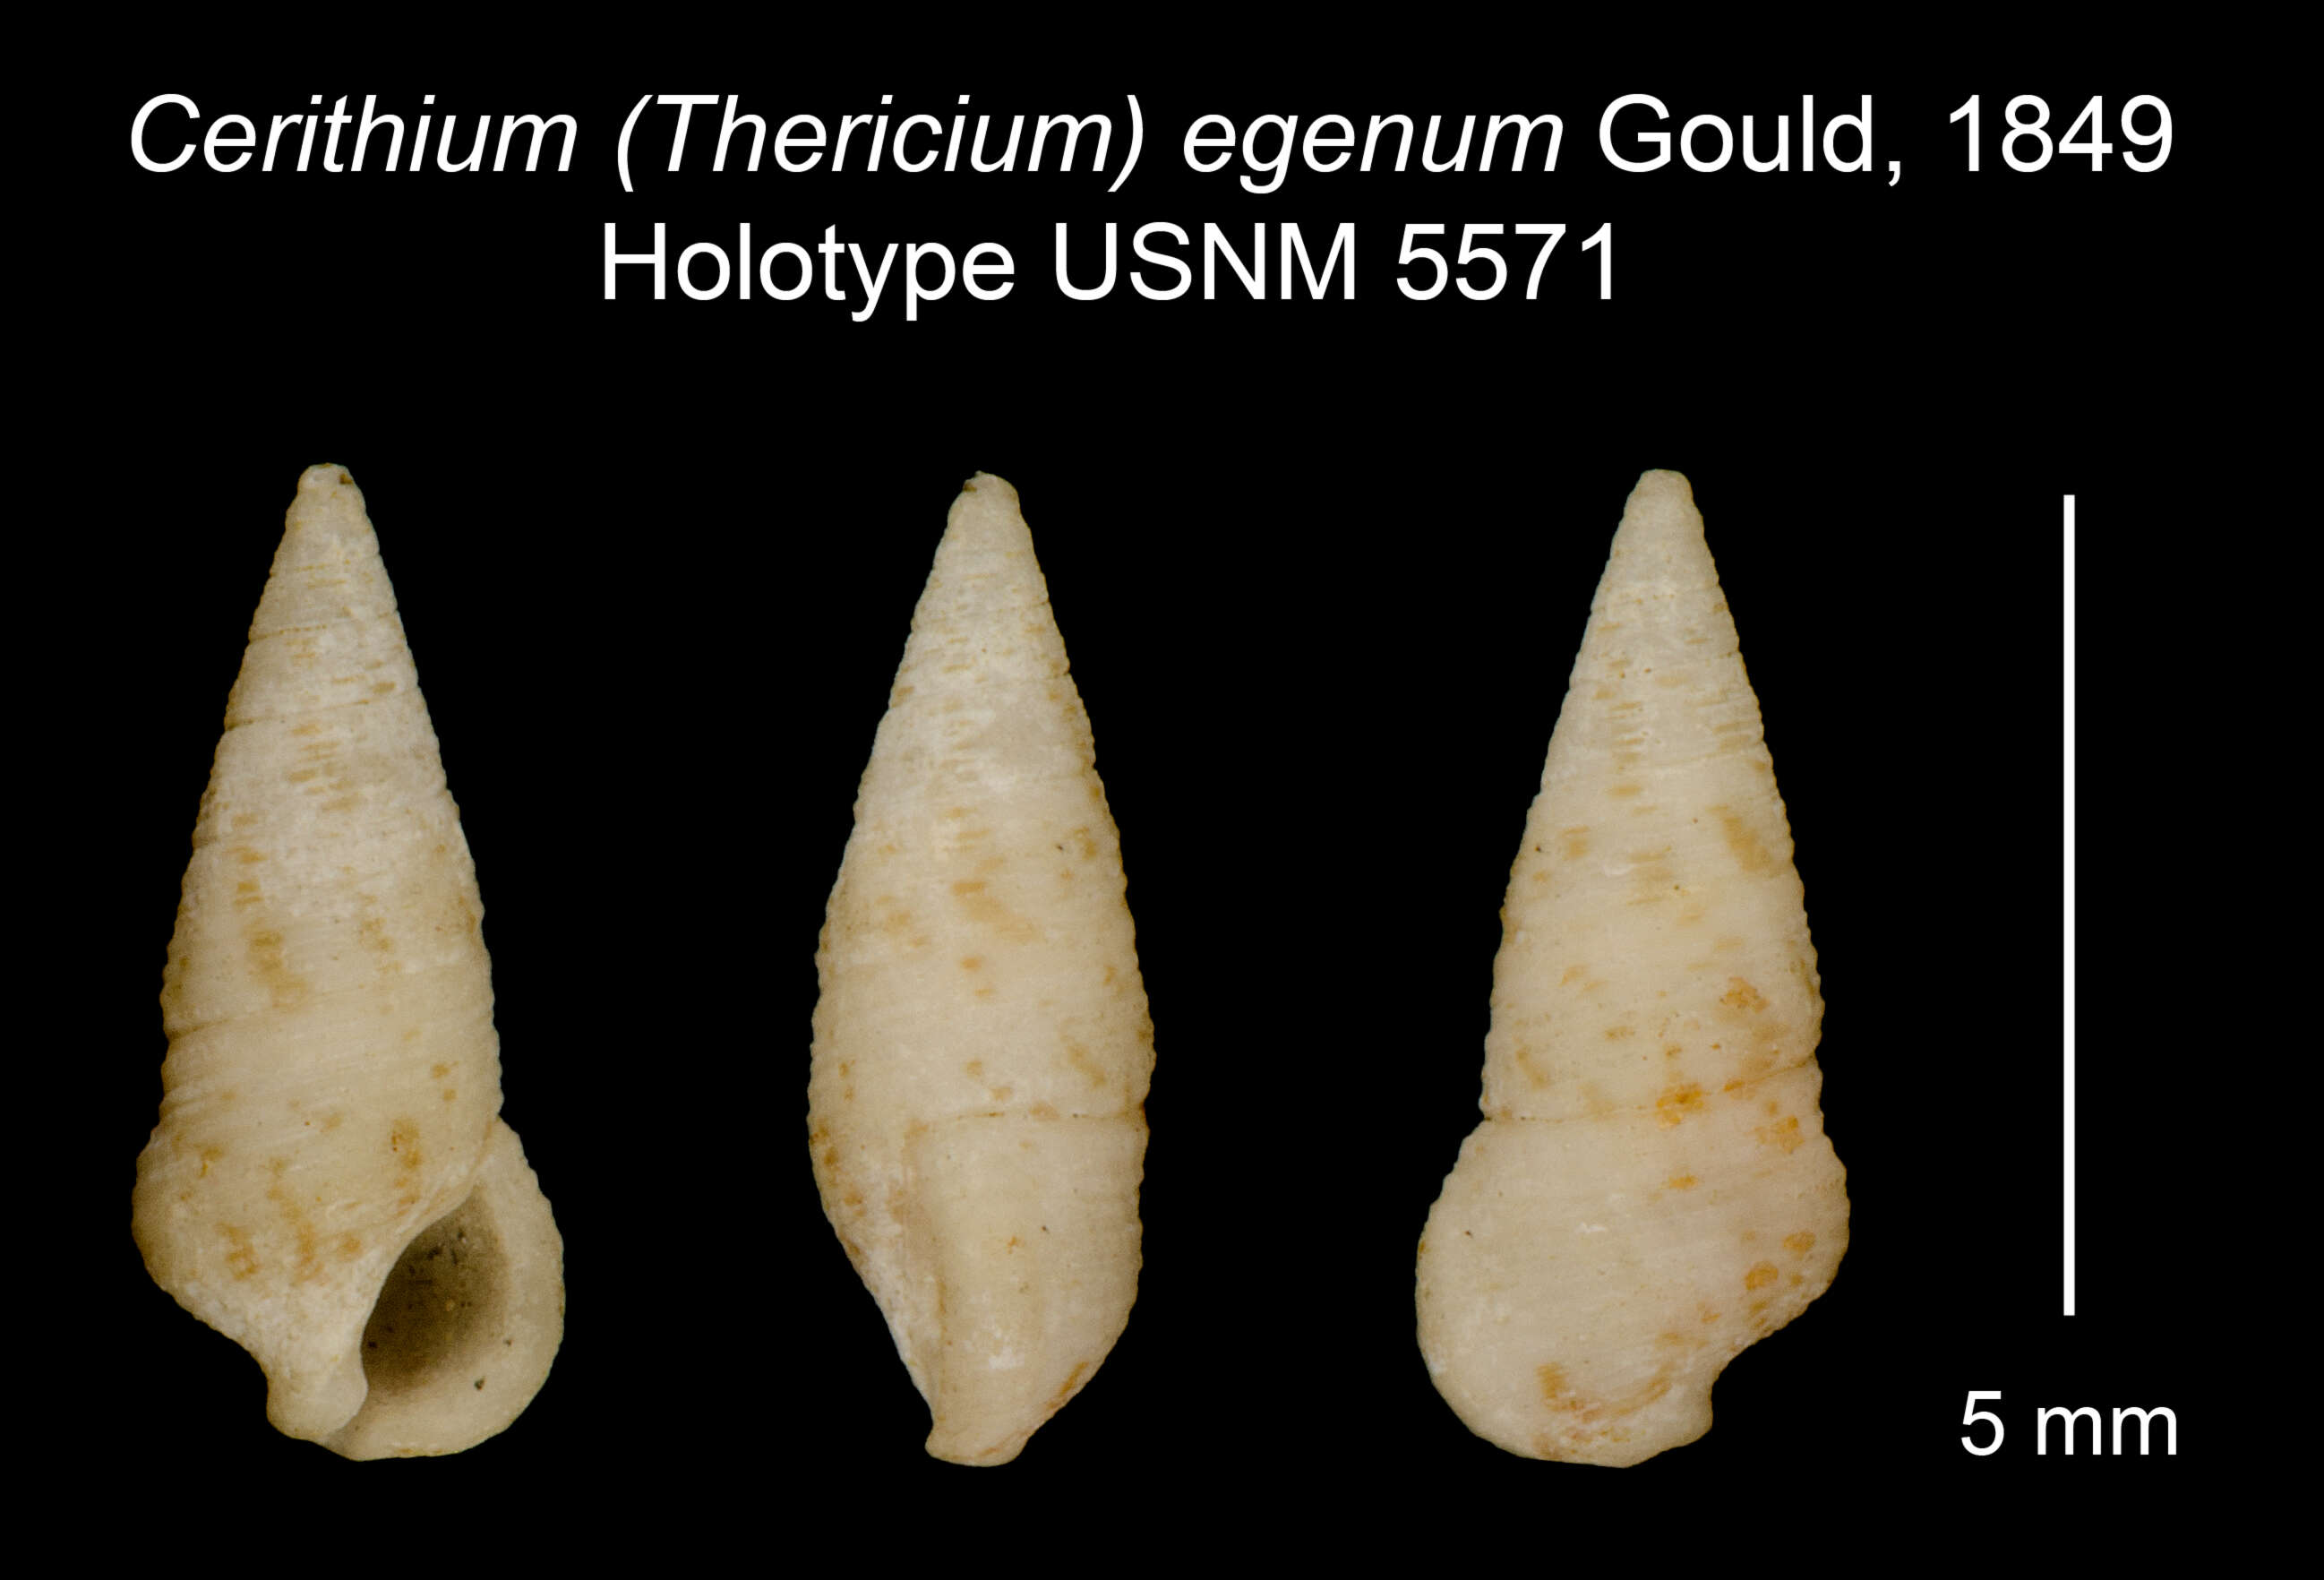 Image of Cerithium egenum Gould 1849